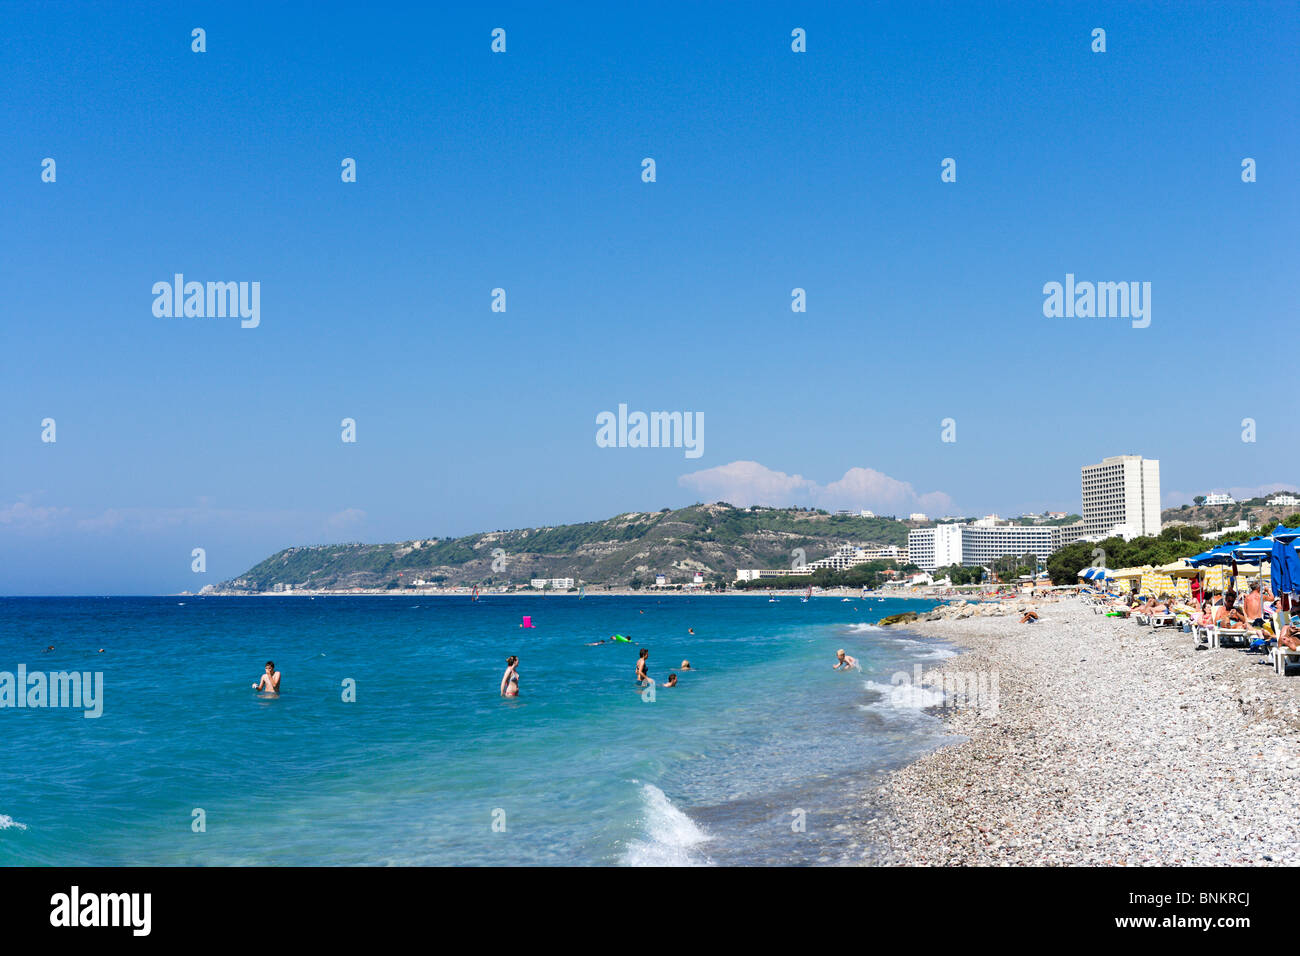 Spiaggia di Ixia, vicino Ialyssos, Baia di Trianda, Rodi, Grecia Foto Stock